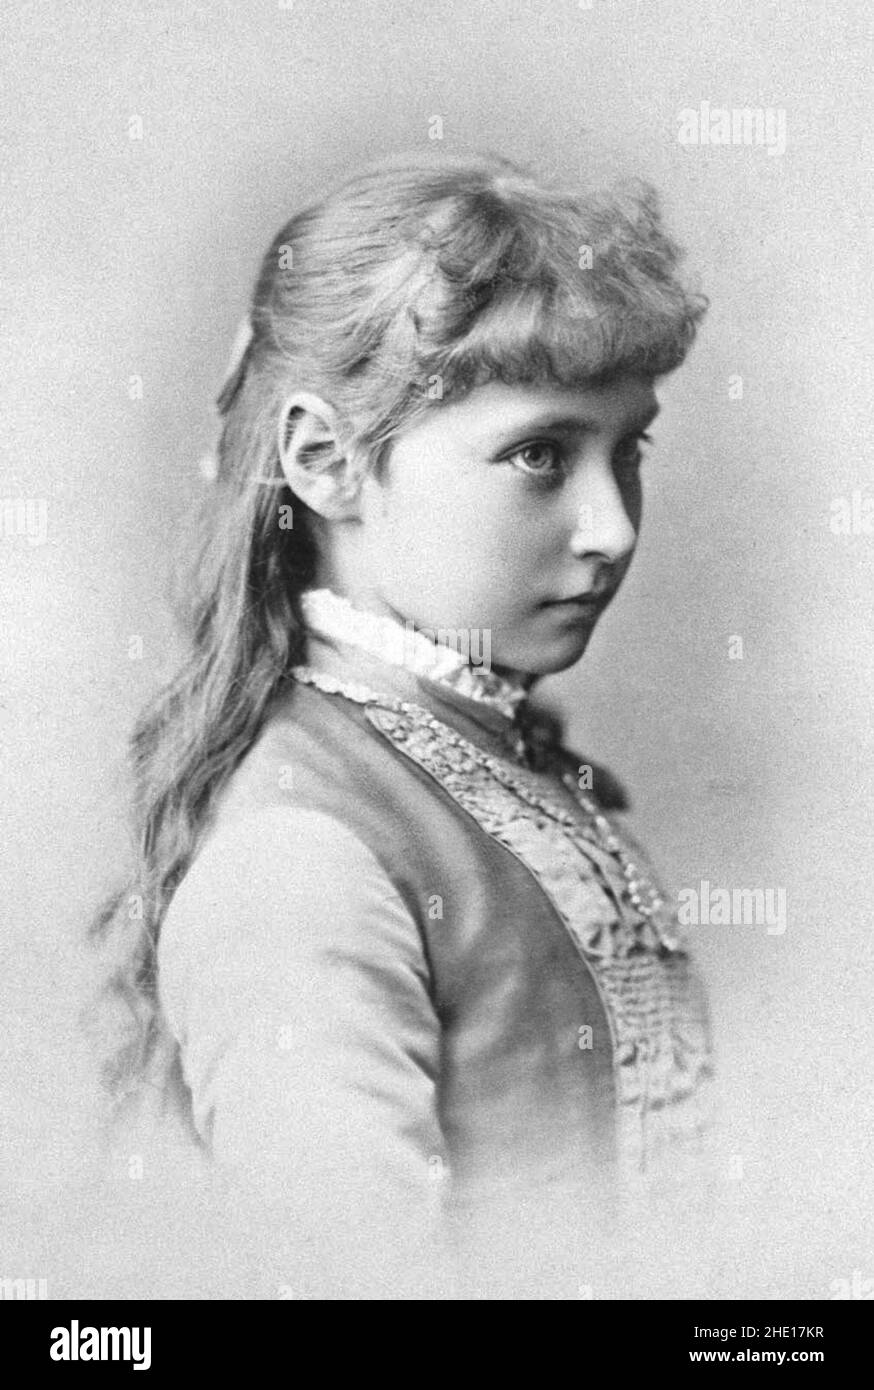 Die Frau des russischen Zaren Nikolaus II., Tsaritsa Alexandra Fjodorowna (Alix von Hessen) als 9-jähriges Mädchen Stockfoto